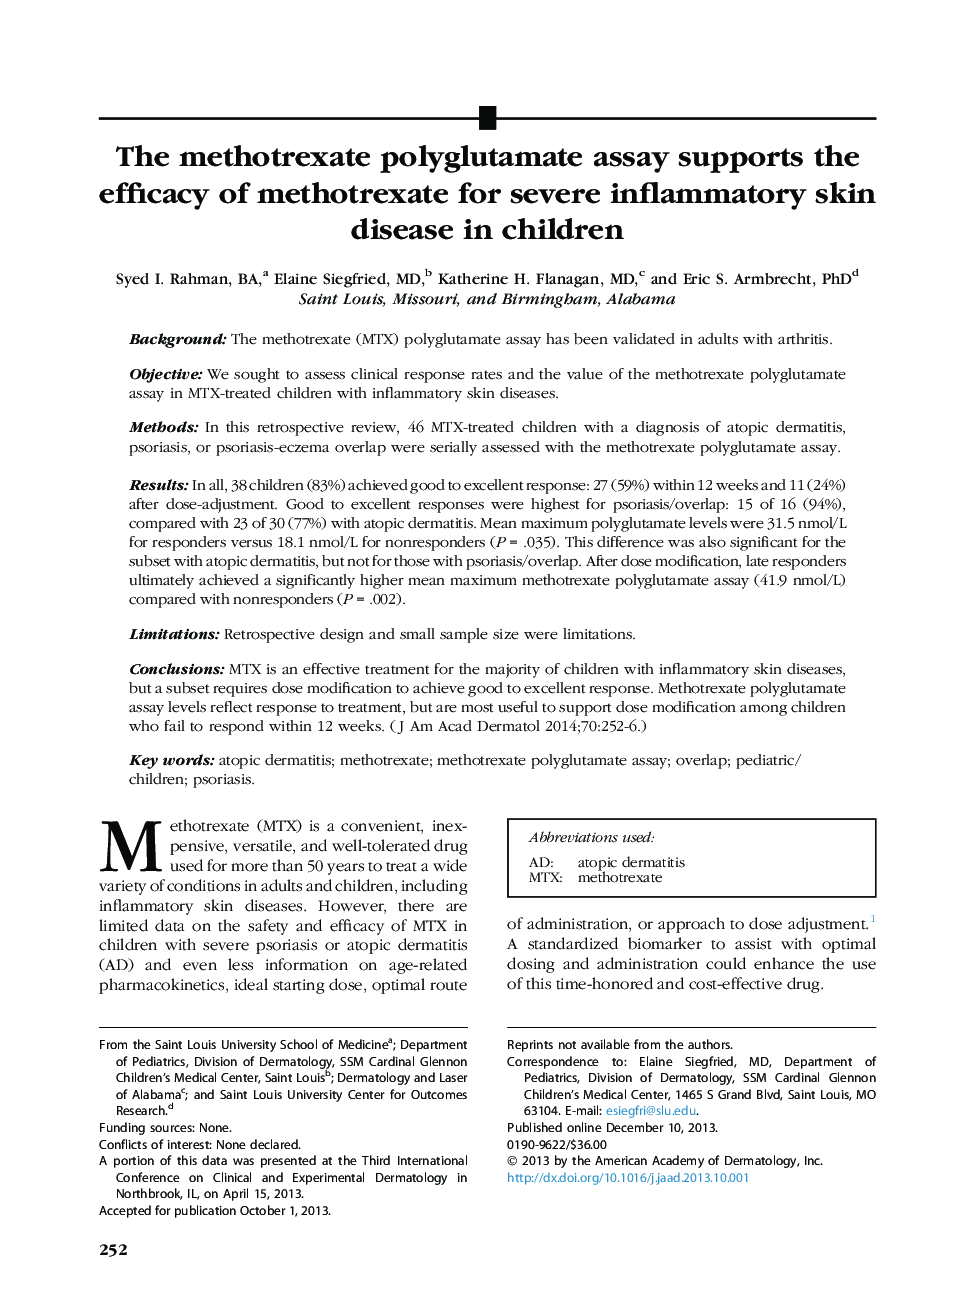 مقاله اصلی متلب اکسید پلی گولاتامات، اثربخشی متوترکسات را برای بیماری های شدید التهابی پوست در کودکان حمایت می کند 